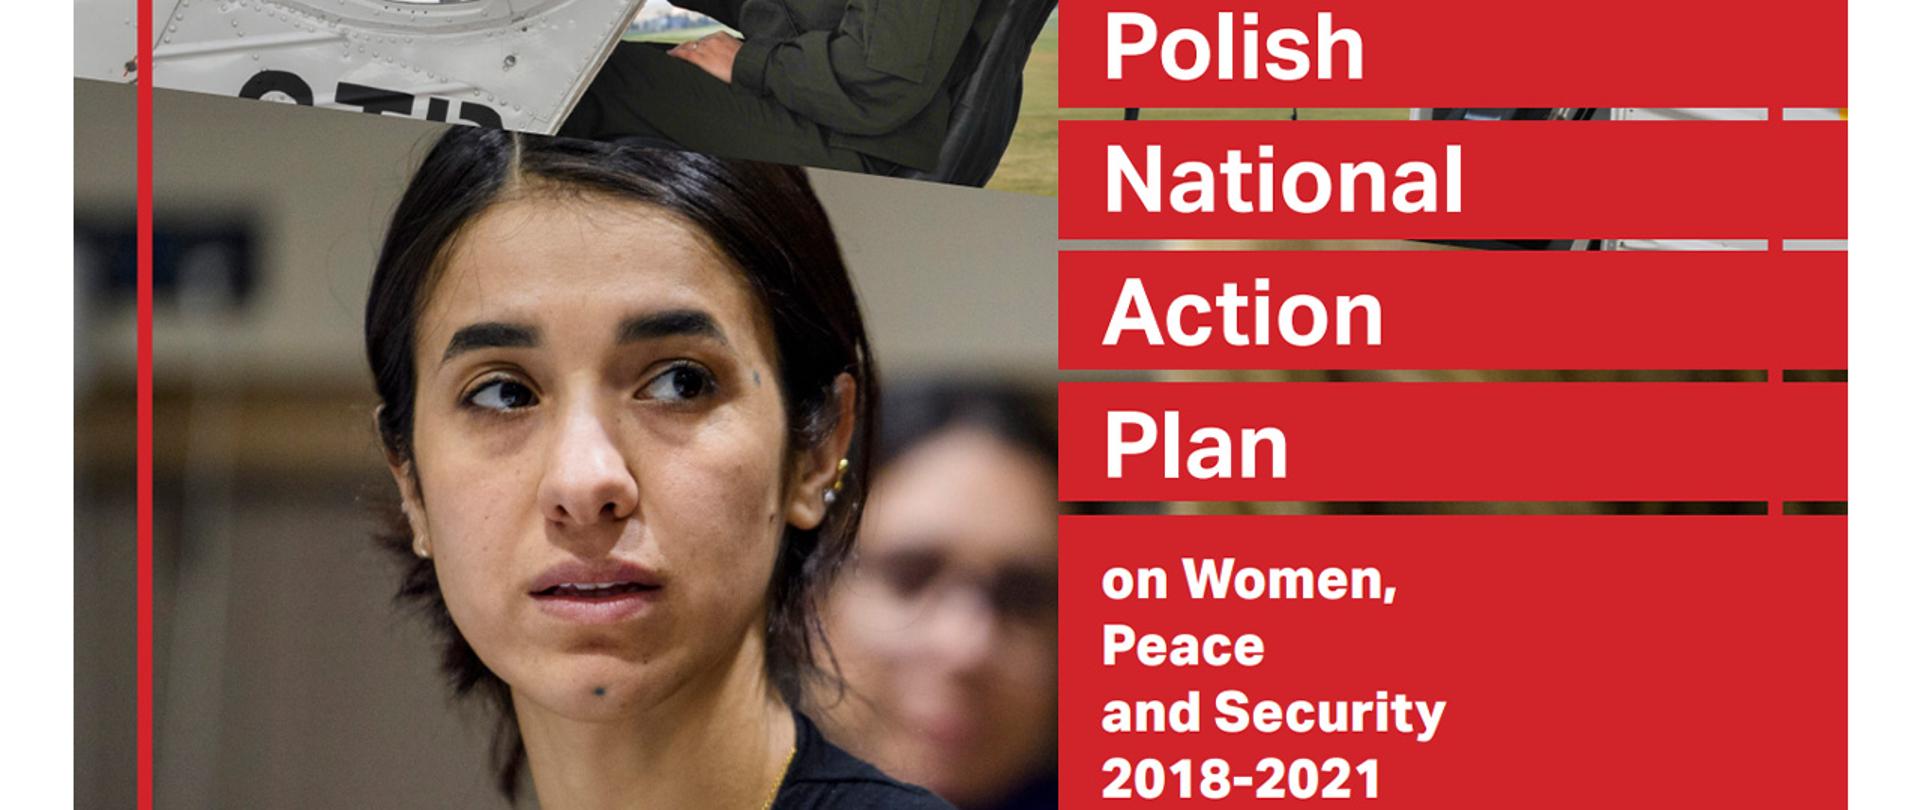 Grafika popularyzująca Krajowy Plan Działania dotyczący Agendy „Kobiety, pokój i bezpieczeństwo” na lata 2018-2021. Napis na grafice: Polish National Action Plan on Women, Peace and Security 2018-2021